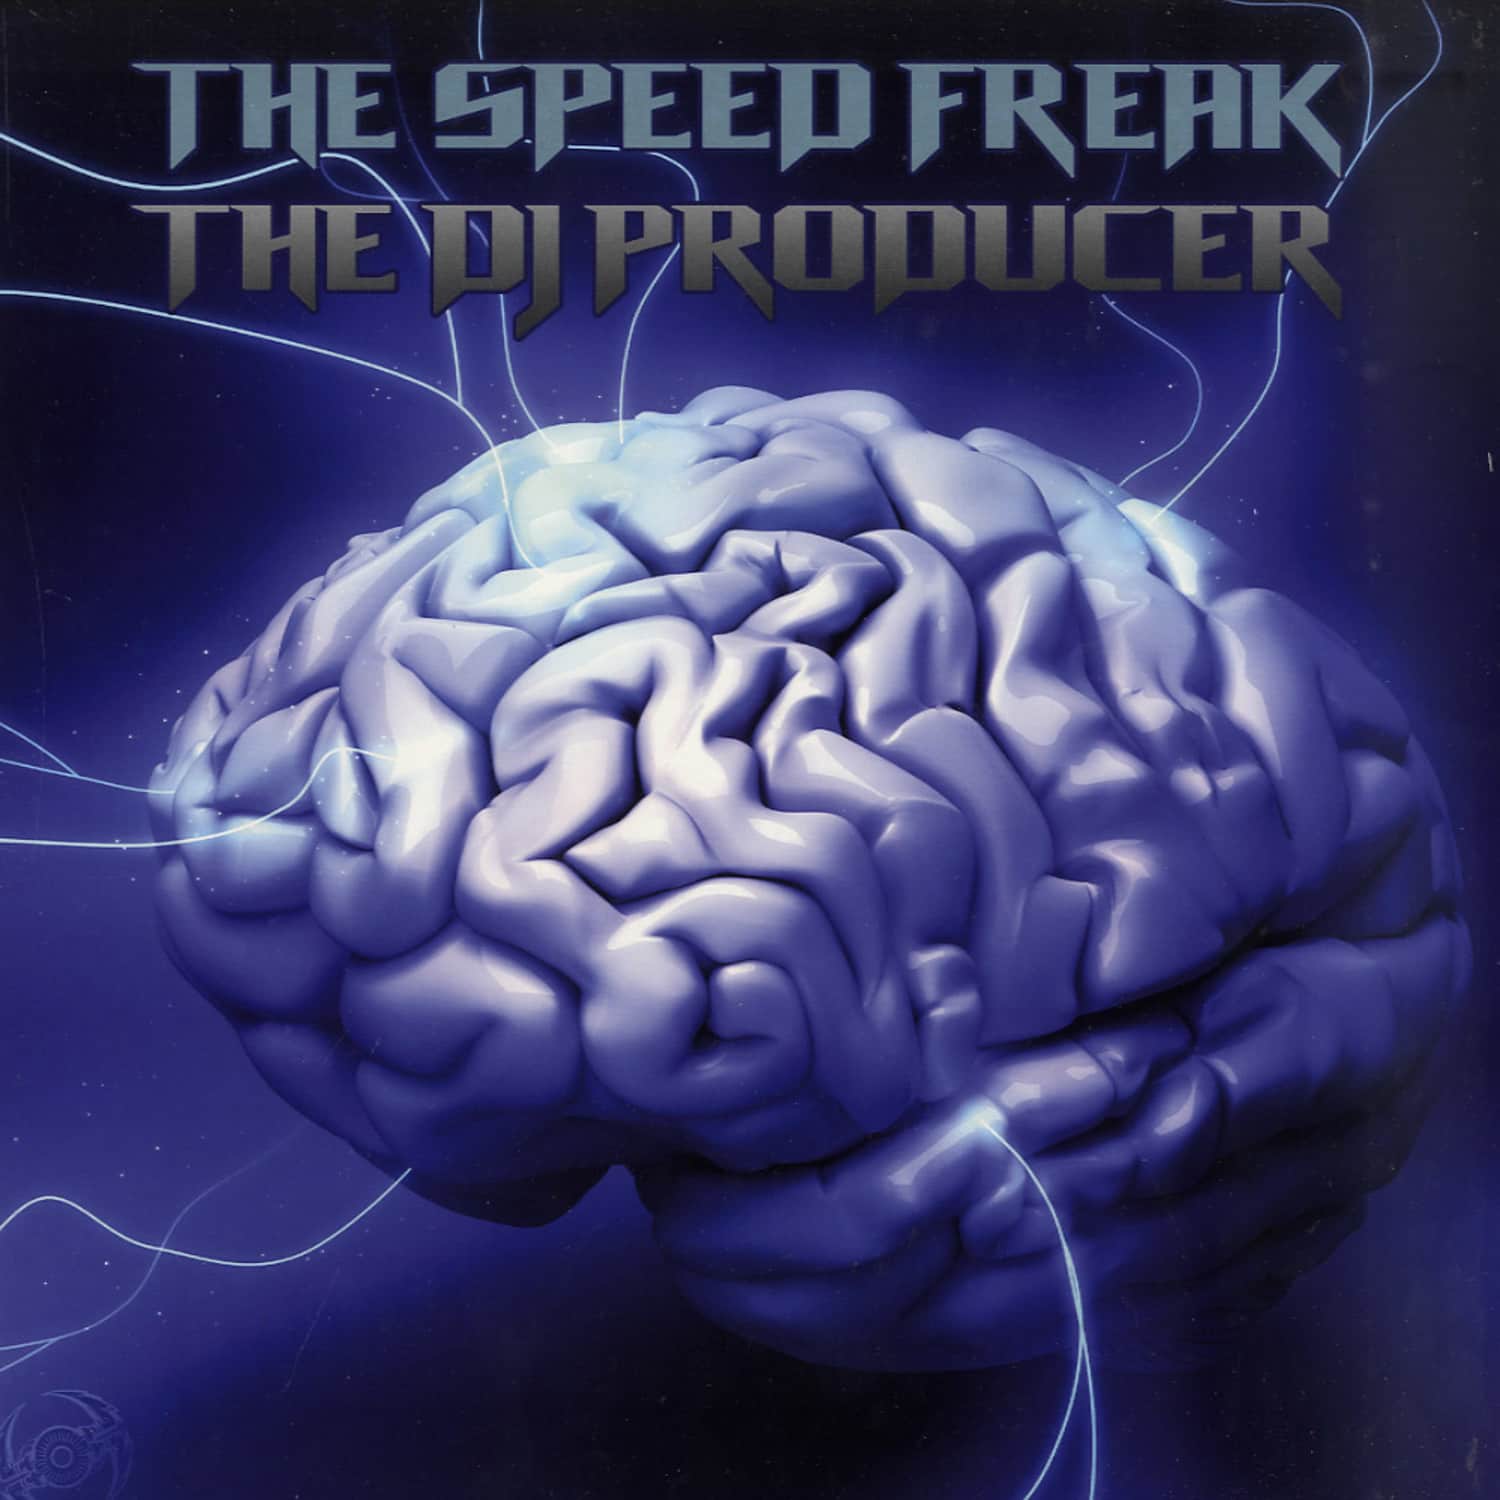 The Speedfreak / DJ Producer - TERROIST